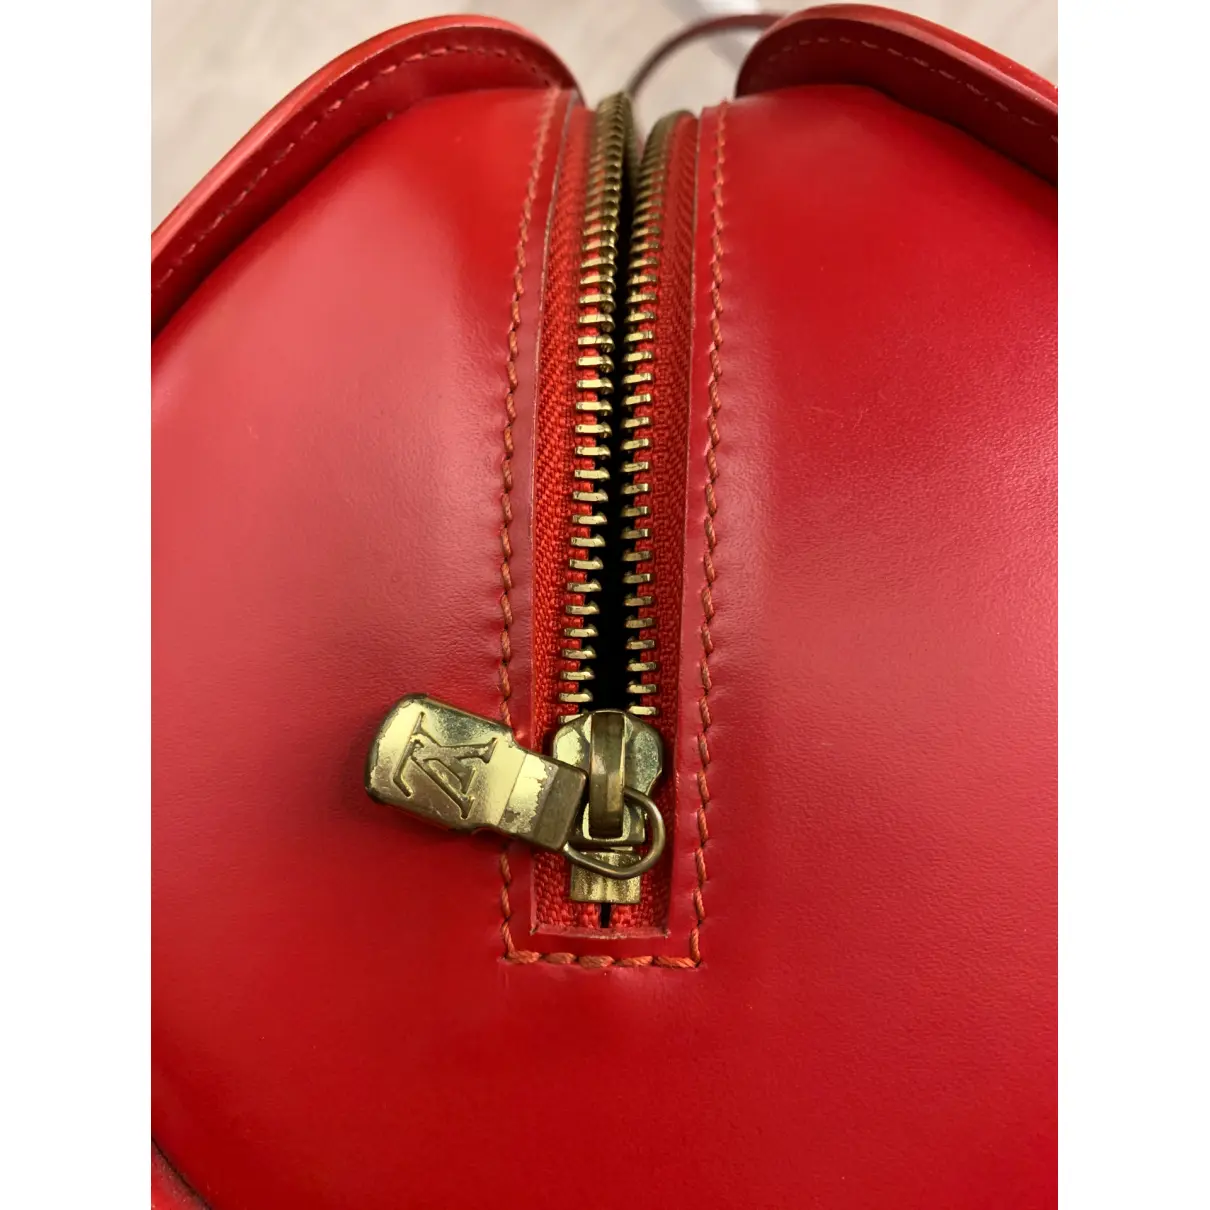 Soufflot Vintage leather handbag Louis Vuitton